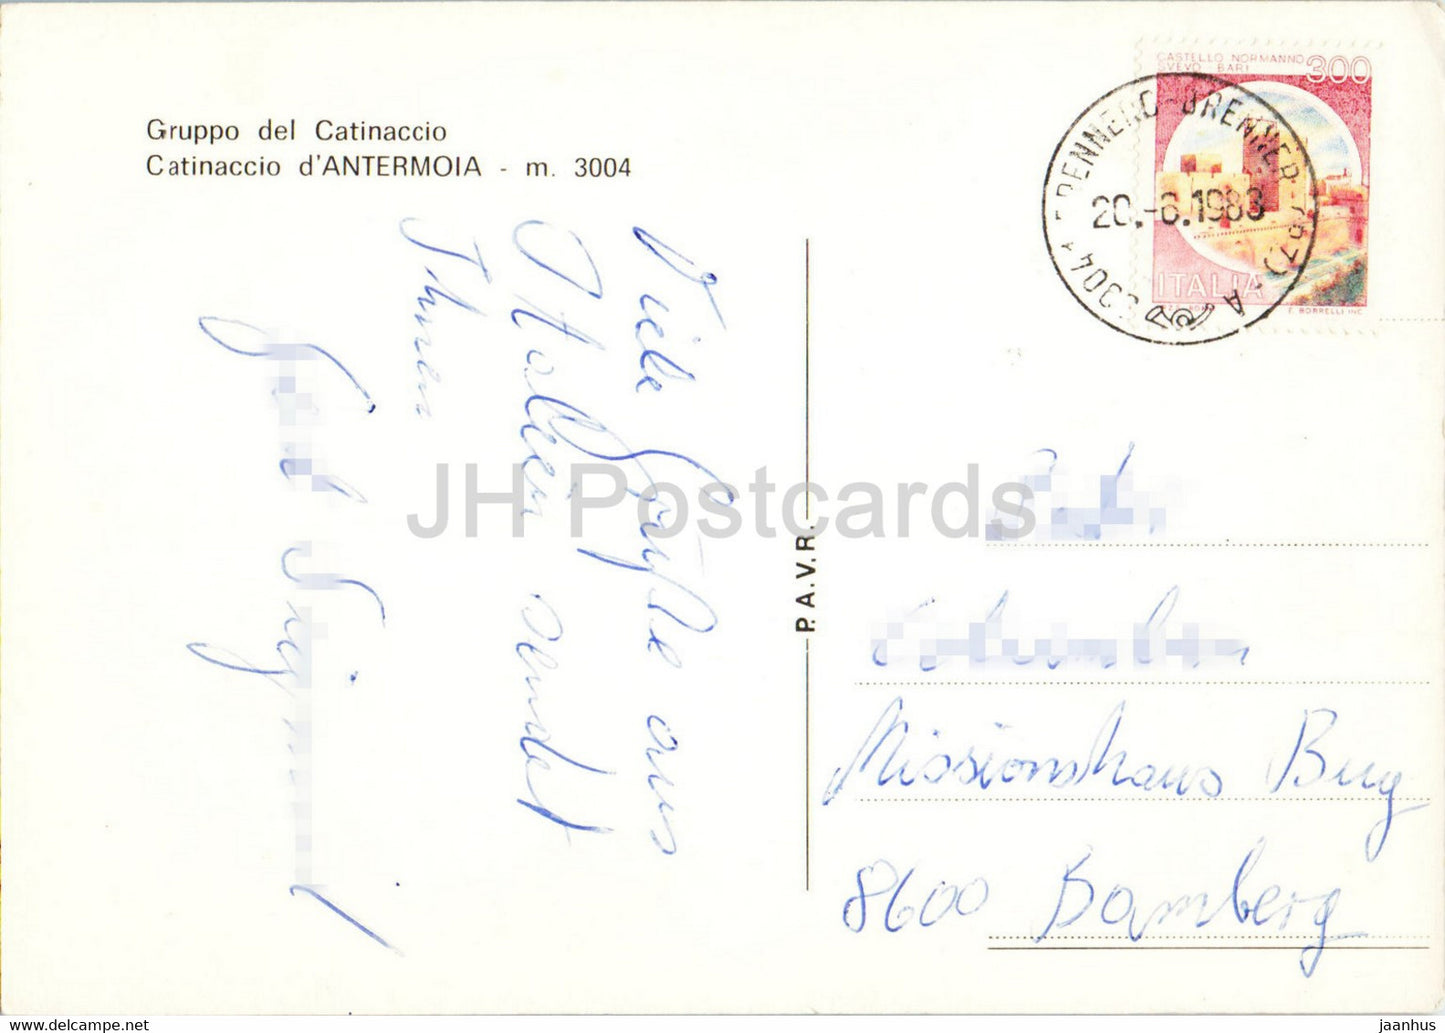 Rifugio Antermoia - Gruppo del Catinaccio - 1983 - Italy - used